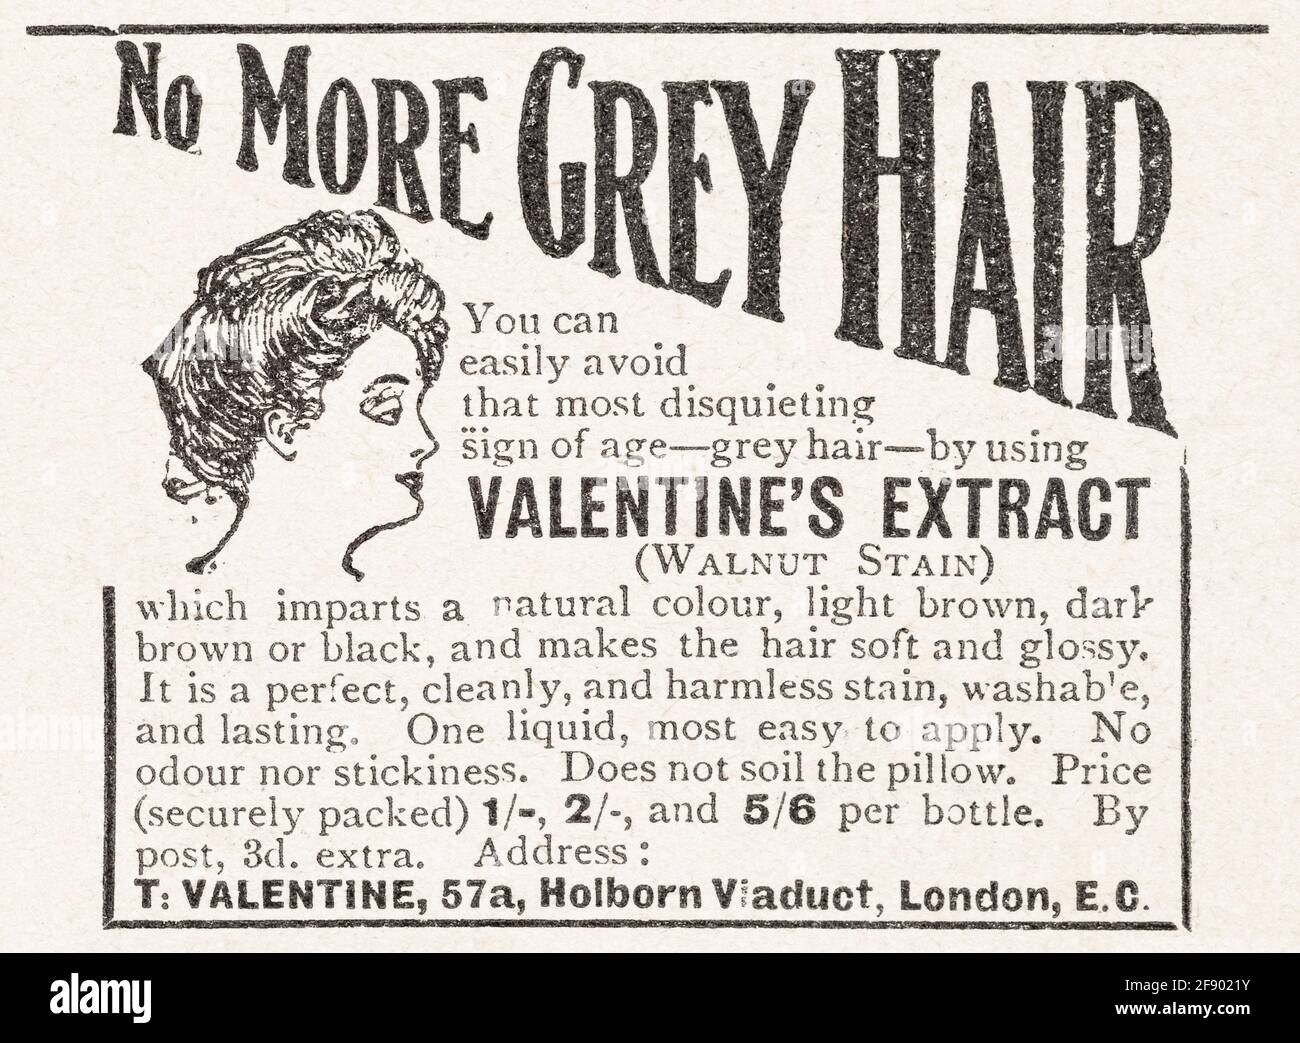 Alte Vintage Haarpflege / Haarpflege Werbung aus der Edwardian Times - 1911 - Zeit der Pre-Advertising Standards. Alte Haarwerbung, Geschichte der Werbung. Stockfoto